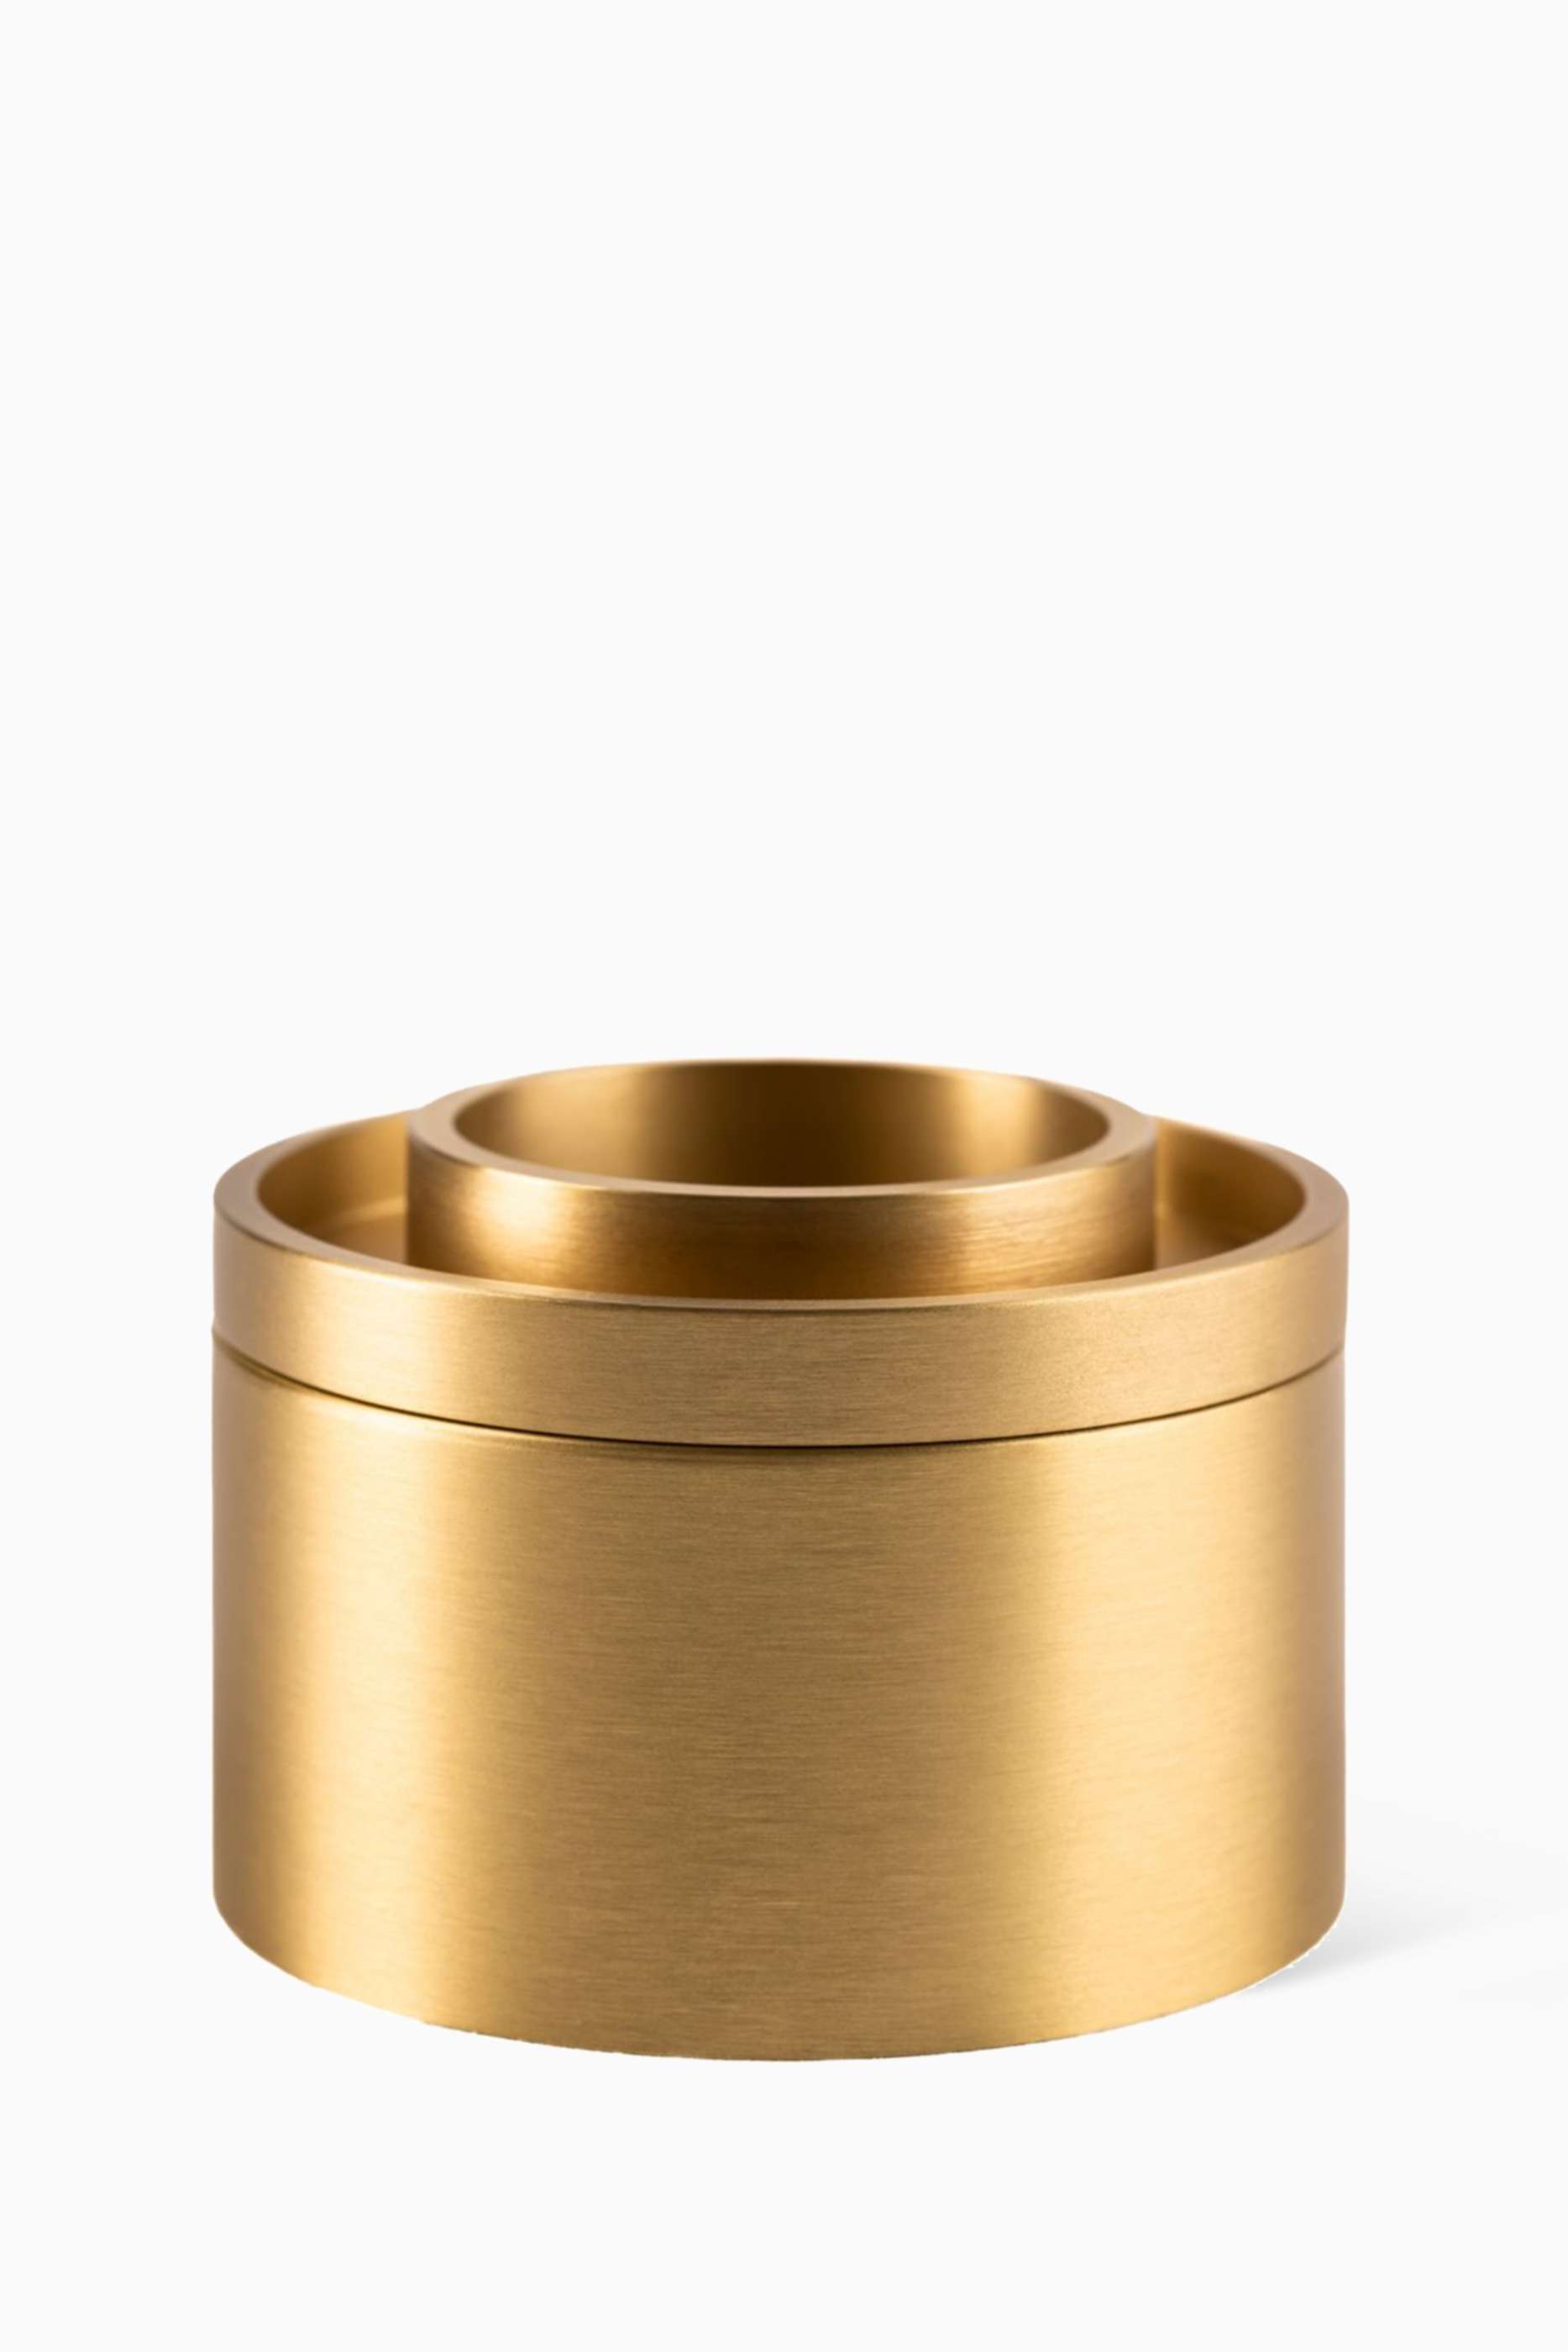 shop-appellation-nuri-brass-oil-burner-for-unisex